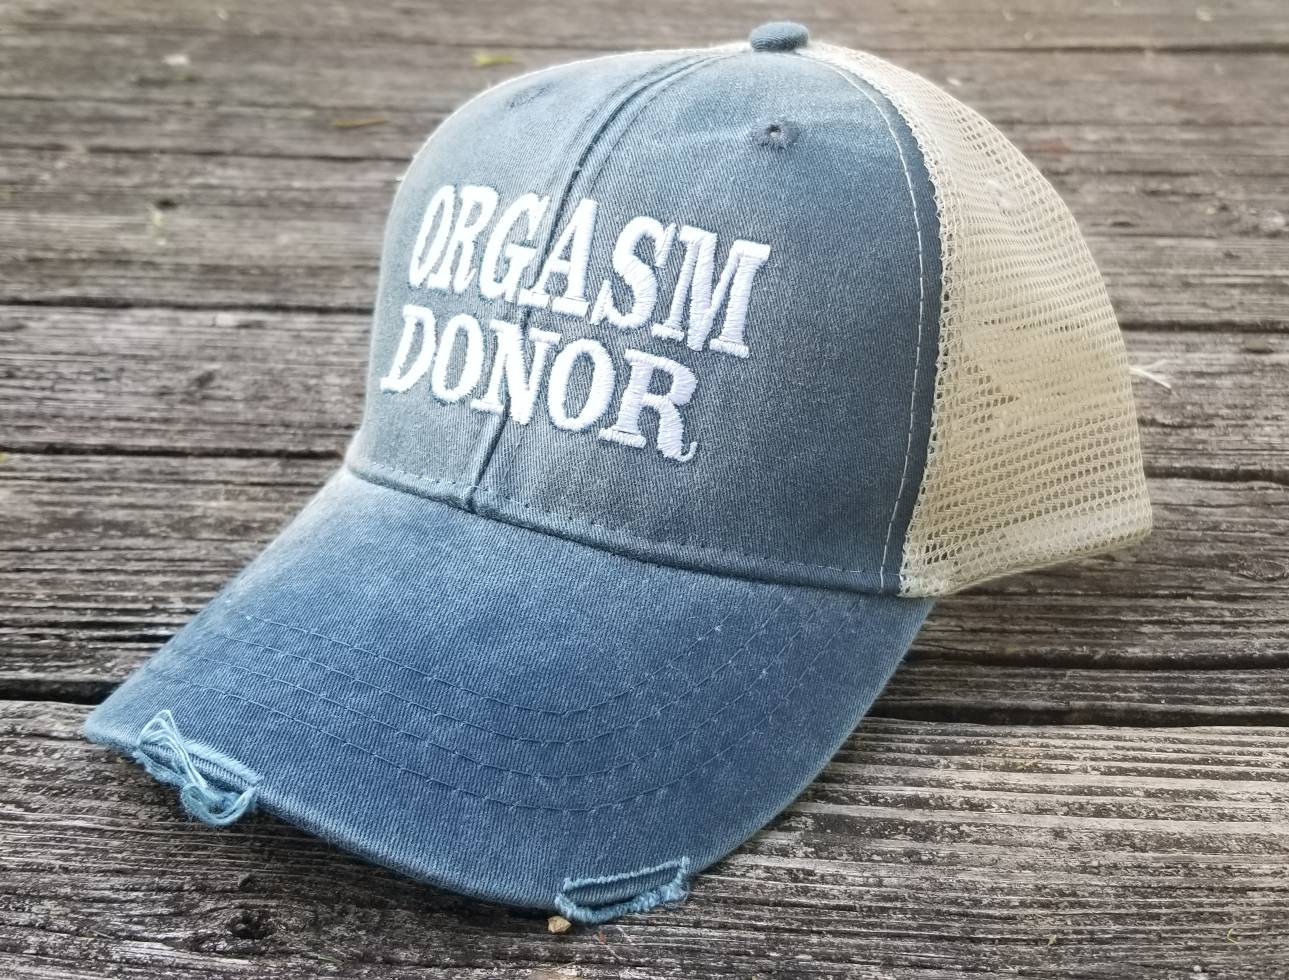 Orgasm Donor Funny Adjustable Trucker Hat Cap 